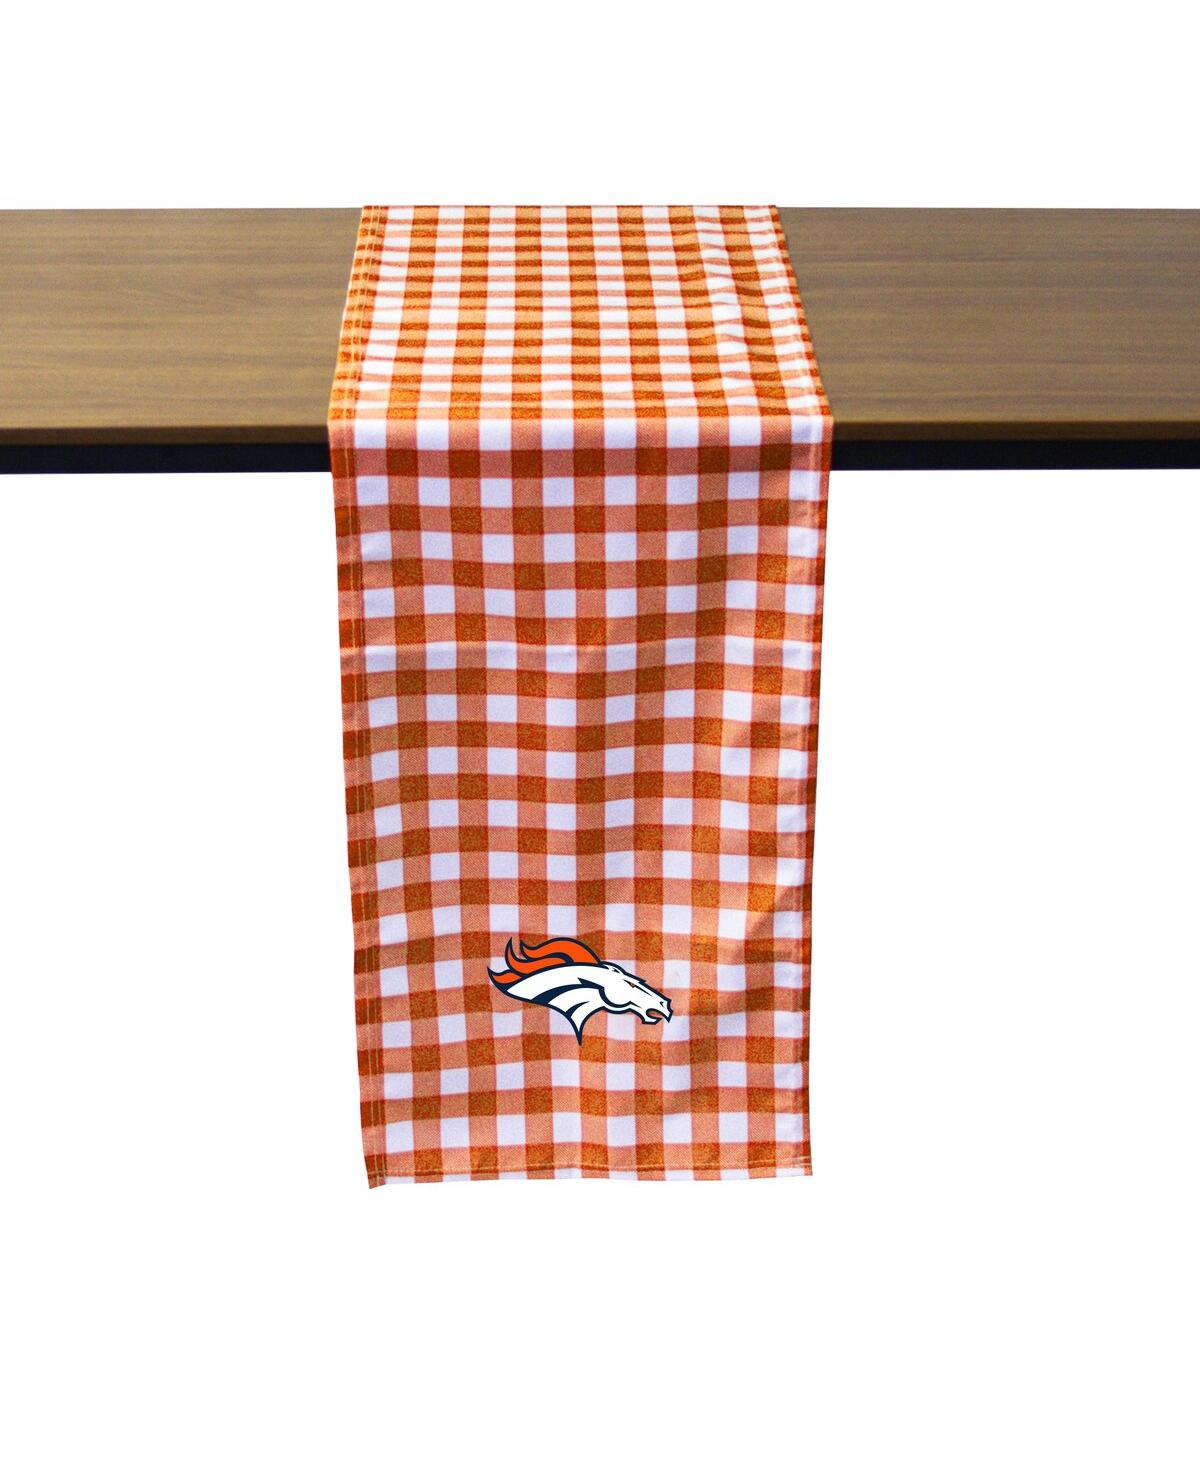 Denver Broncos Buffalo Check Table Runner - Orange, White